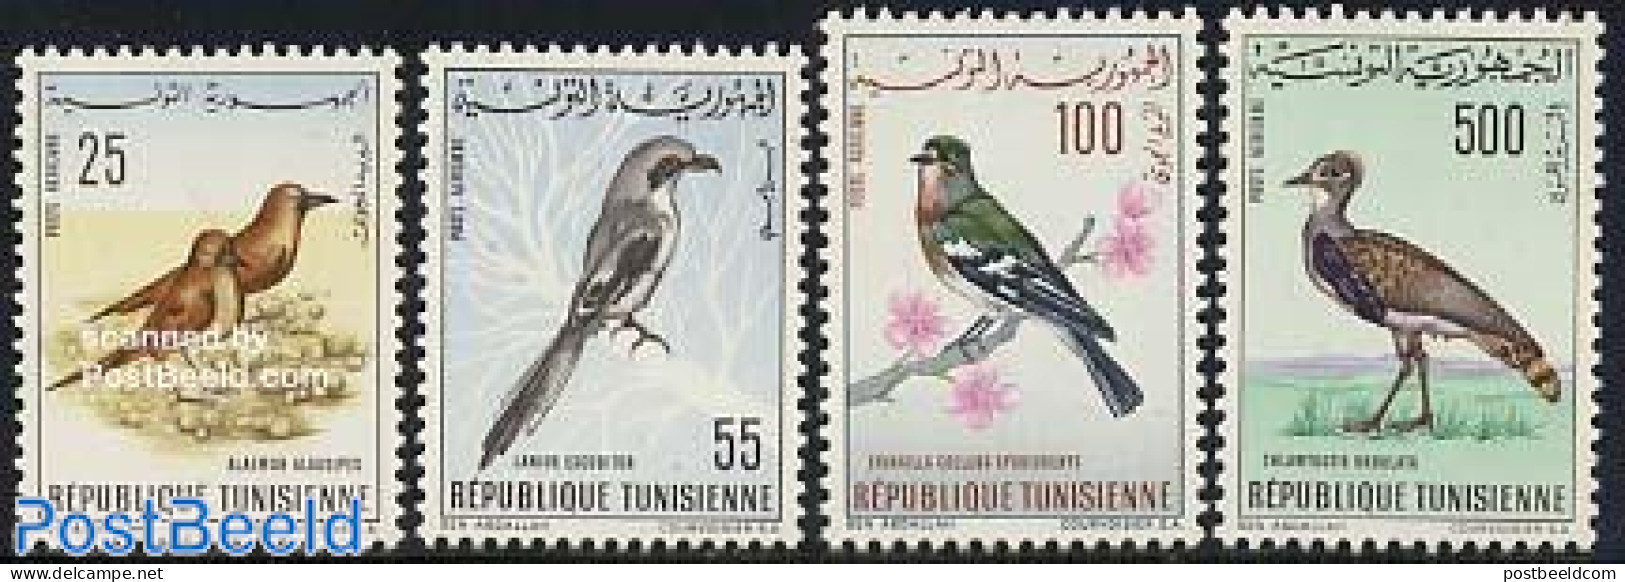 Tunisia 1965 Birds 4v, Mint NH, Nature - Birds - Tunisia (1956-...)